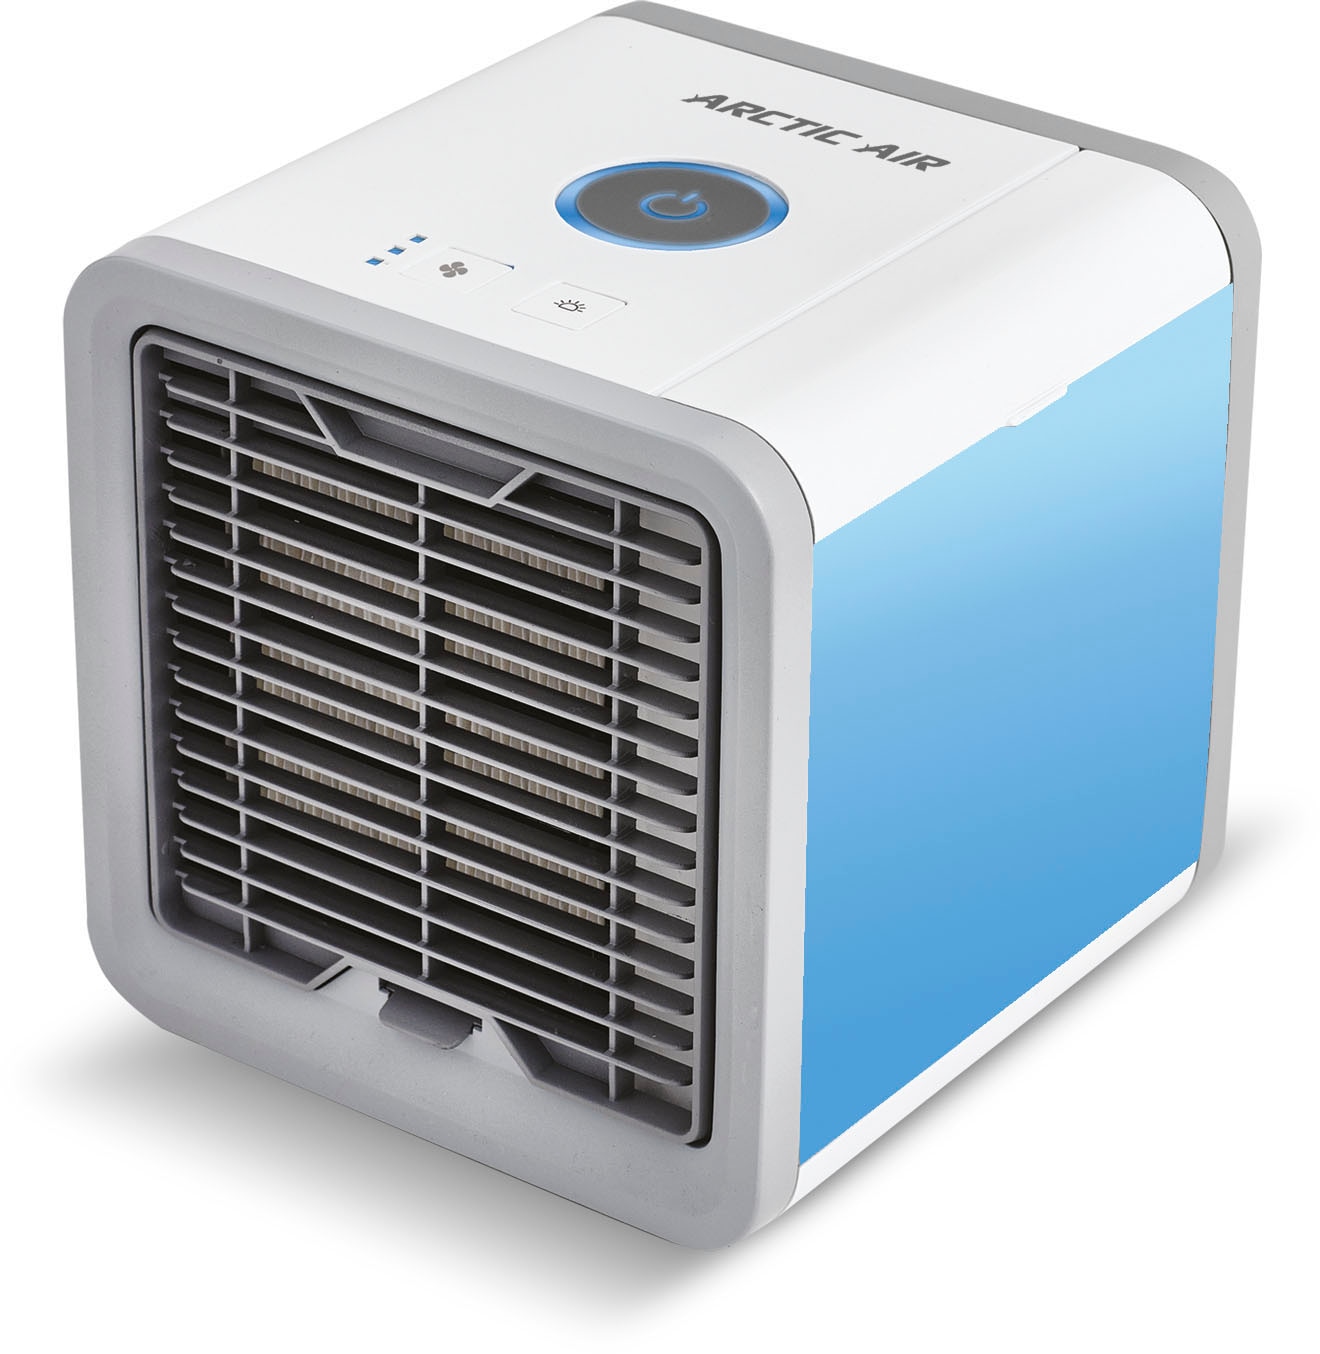 MediaShop Ventilatorkombigerät »Arctic Air«, Luftkühler, kühlt, befeuchtet und erfrischt die Luft in Ihrer Umgebung